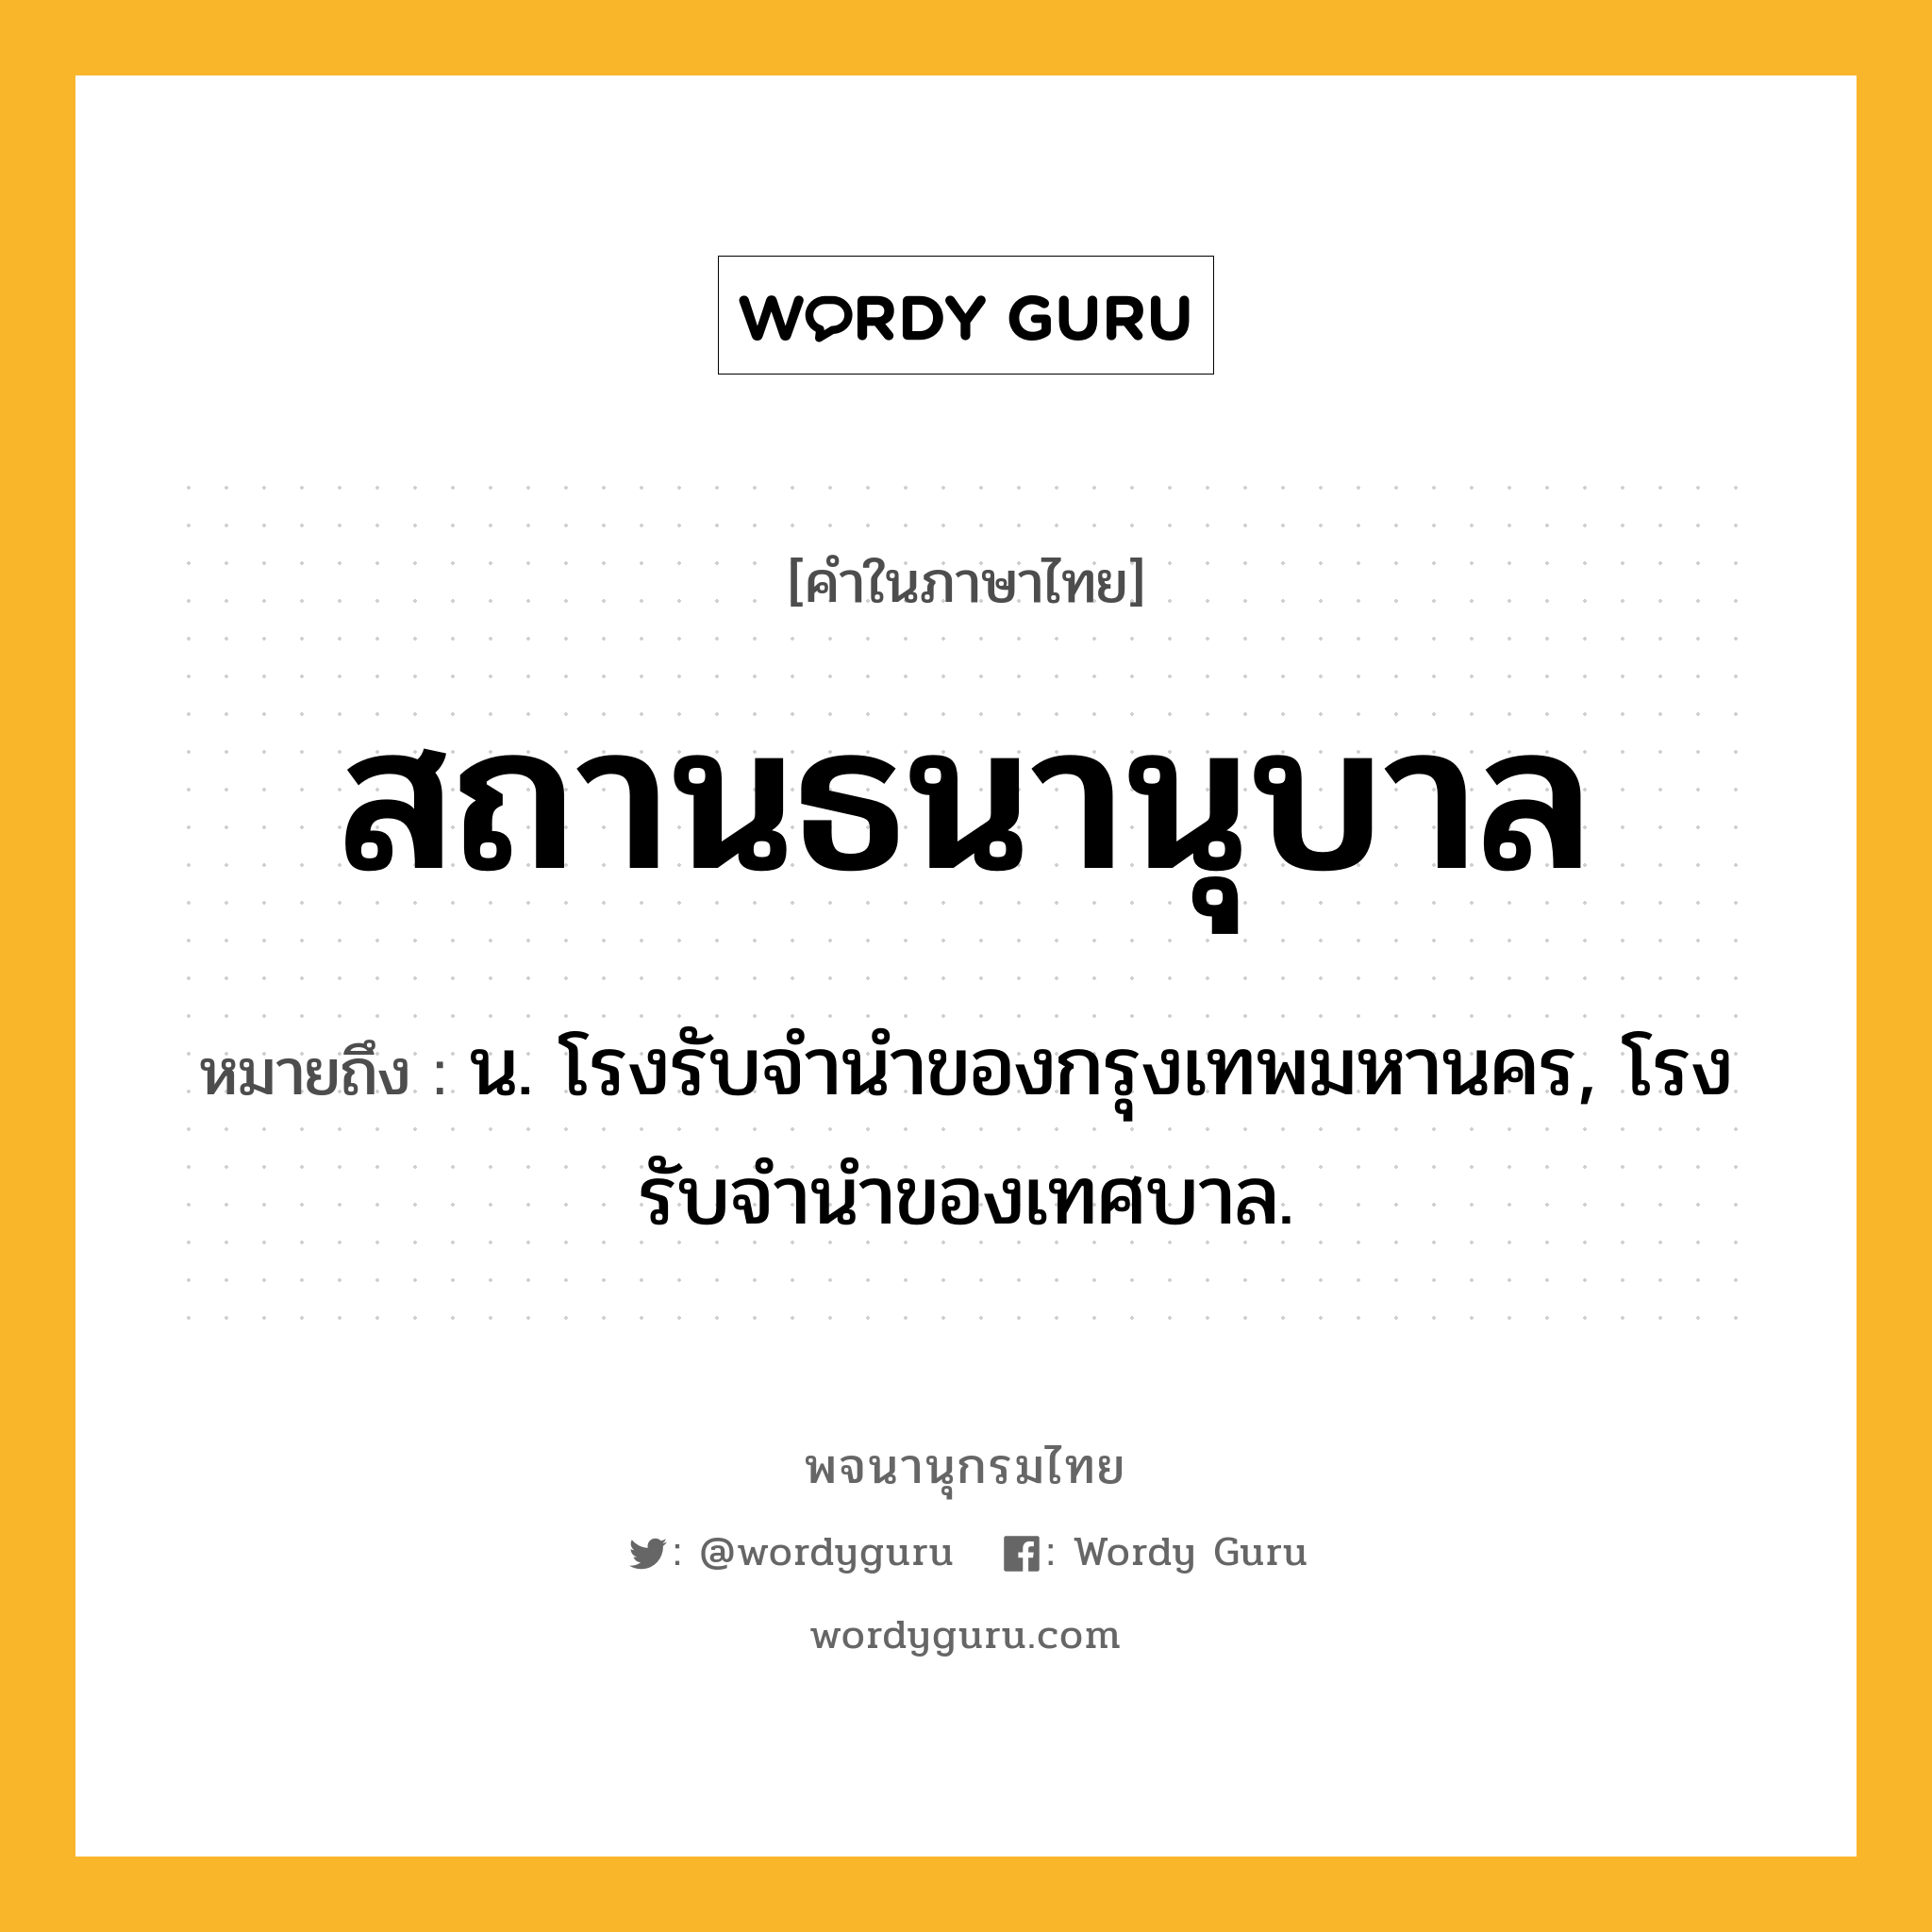 สถานธนานุบาล ความหมาย หมายถึงอะไร?, คำในภาษาไทย สถานธนานุบาล หมายถึง น. โรงรับจำนำของกรุงเทพมหานคร, โรงรับจำนำของเทศบาล.